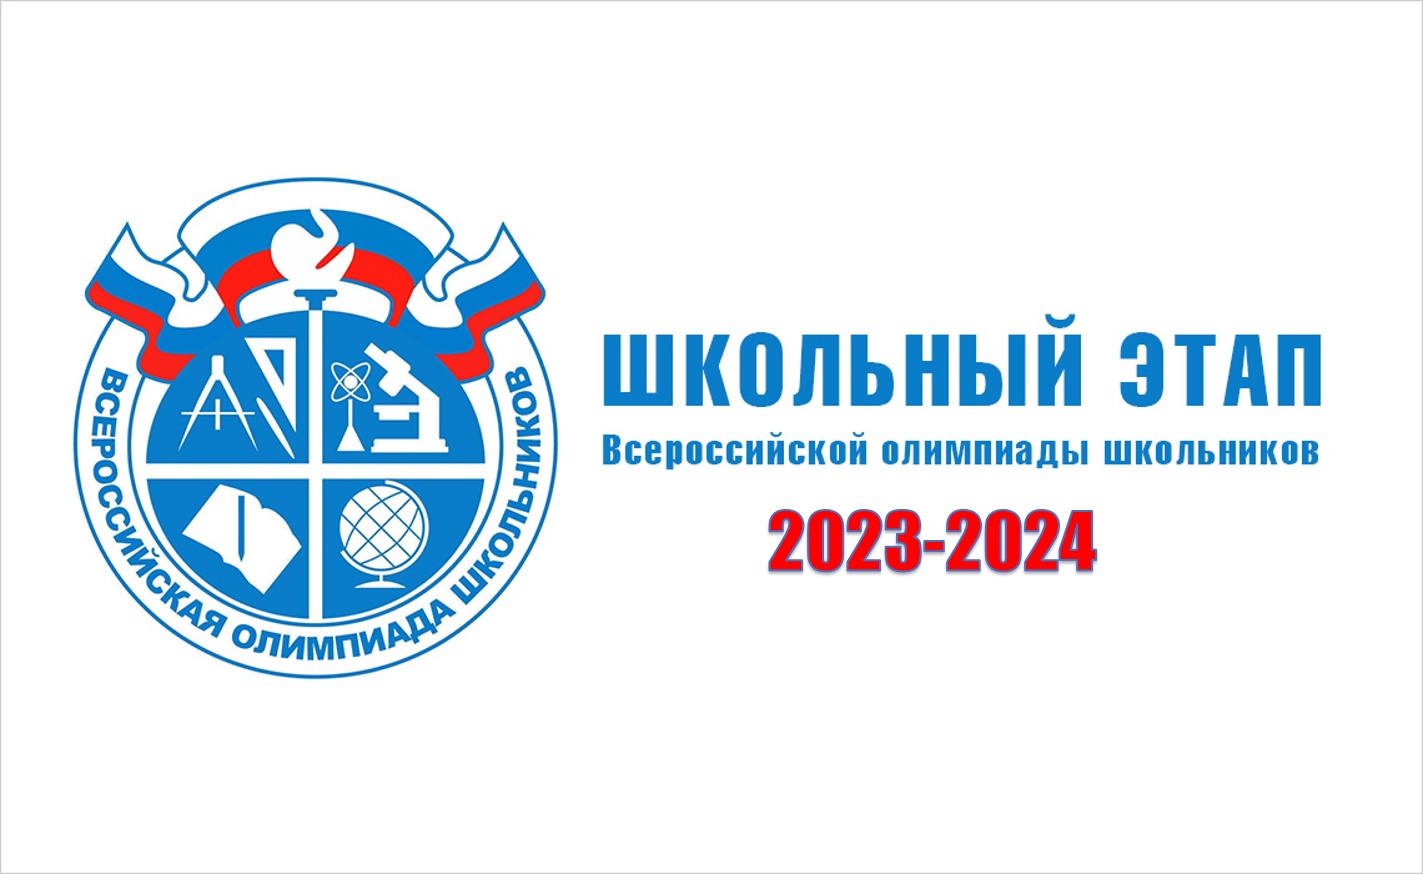 Новый урок 2023 2024. Школьный этап Всероссийской олимпиады школьников 2023-2024. Региональный этап ВСОШ 2023-2024.